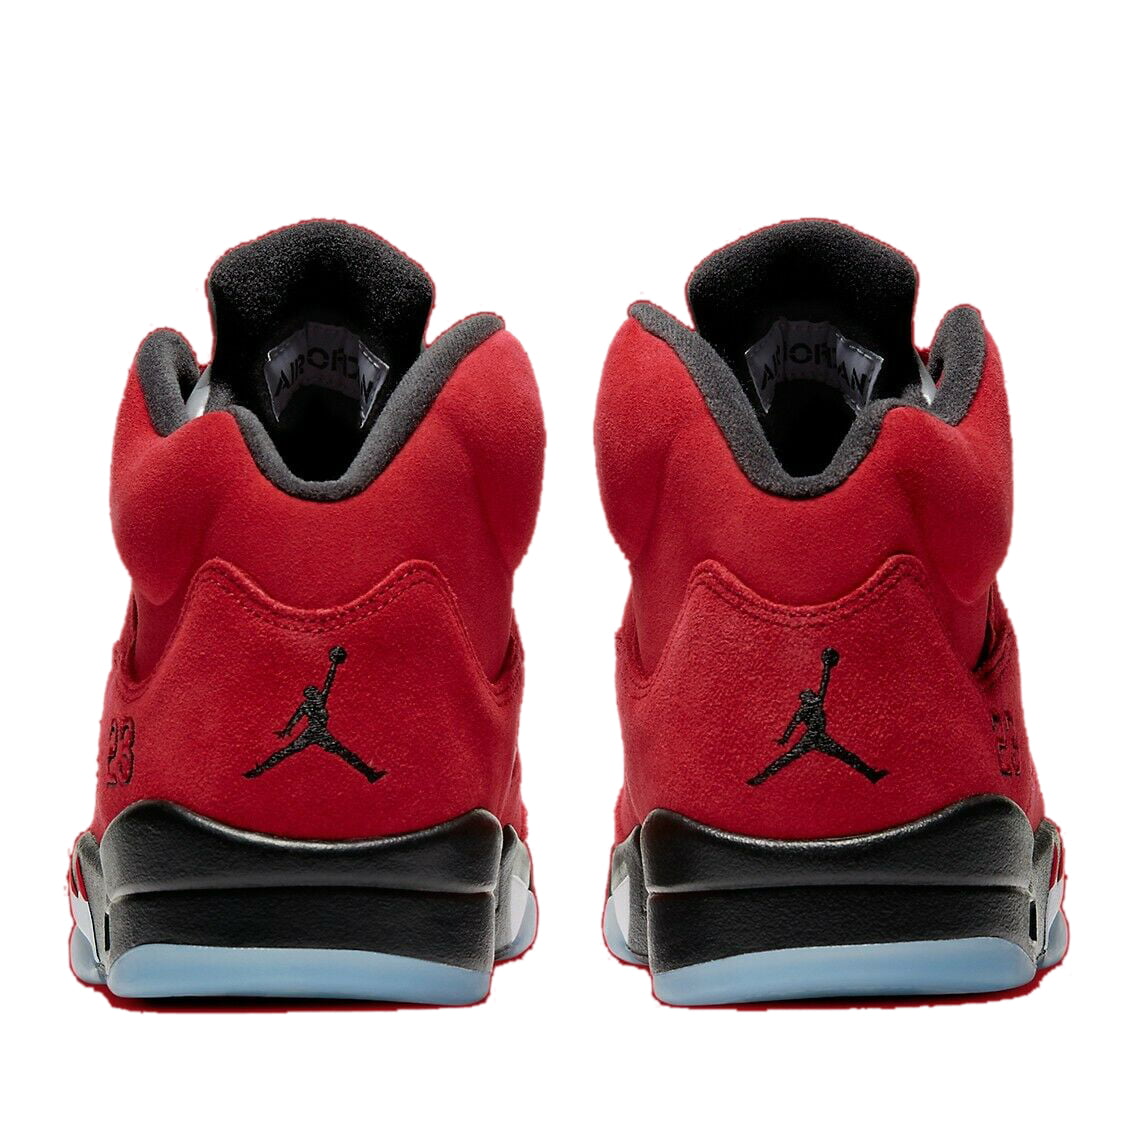 Sneakers Release – Jordan 5 Retro “Raging Bull”/  “Toro” Colorway Drops April 10